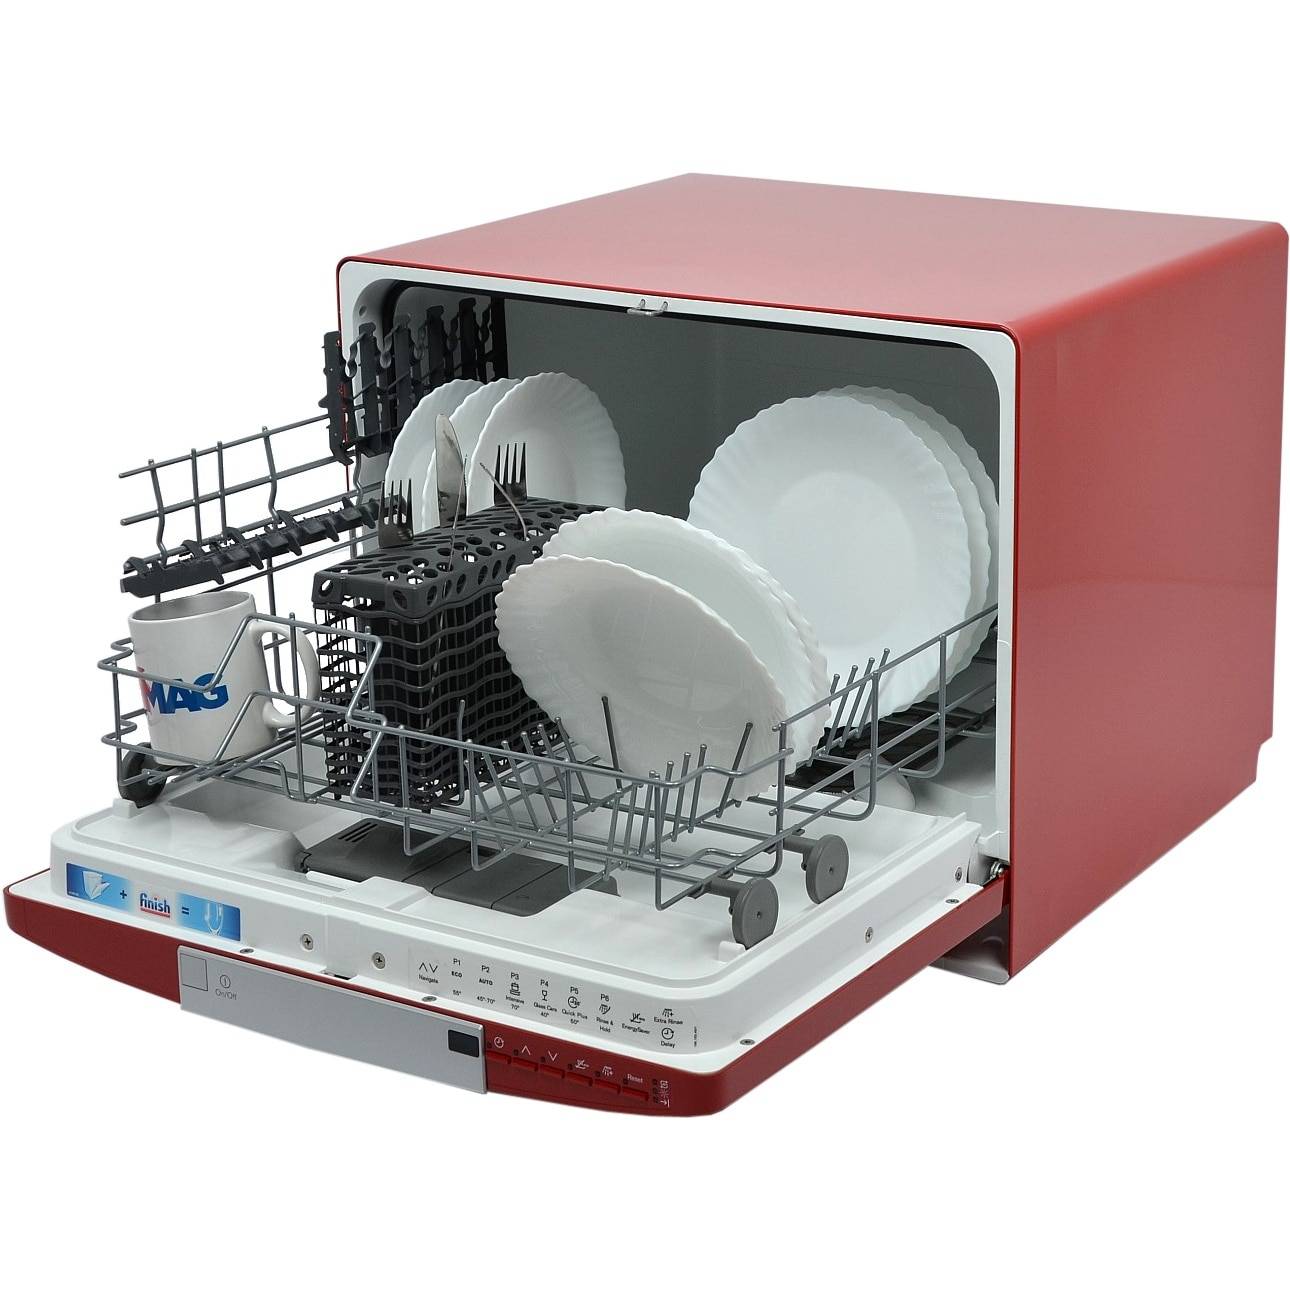 Сравнение лучших моделей встраиваемых посудомоек electrolux шириной 45 см